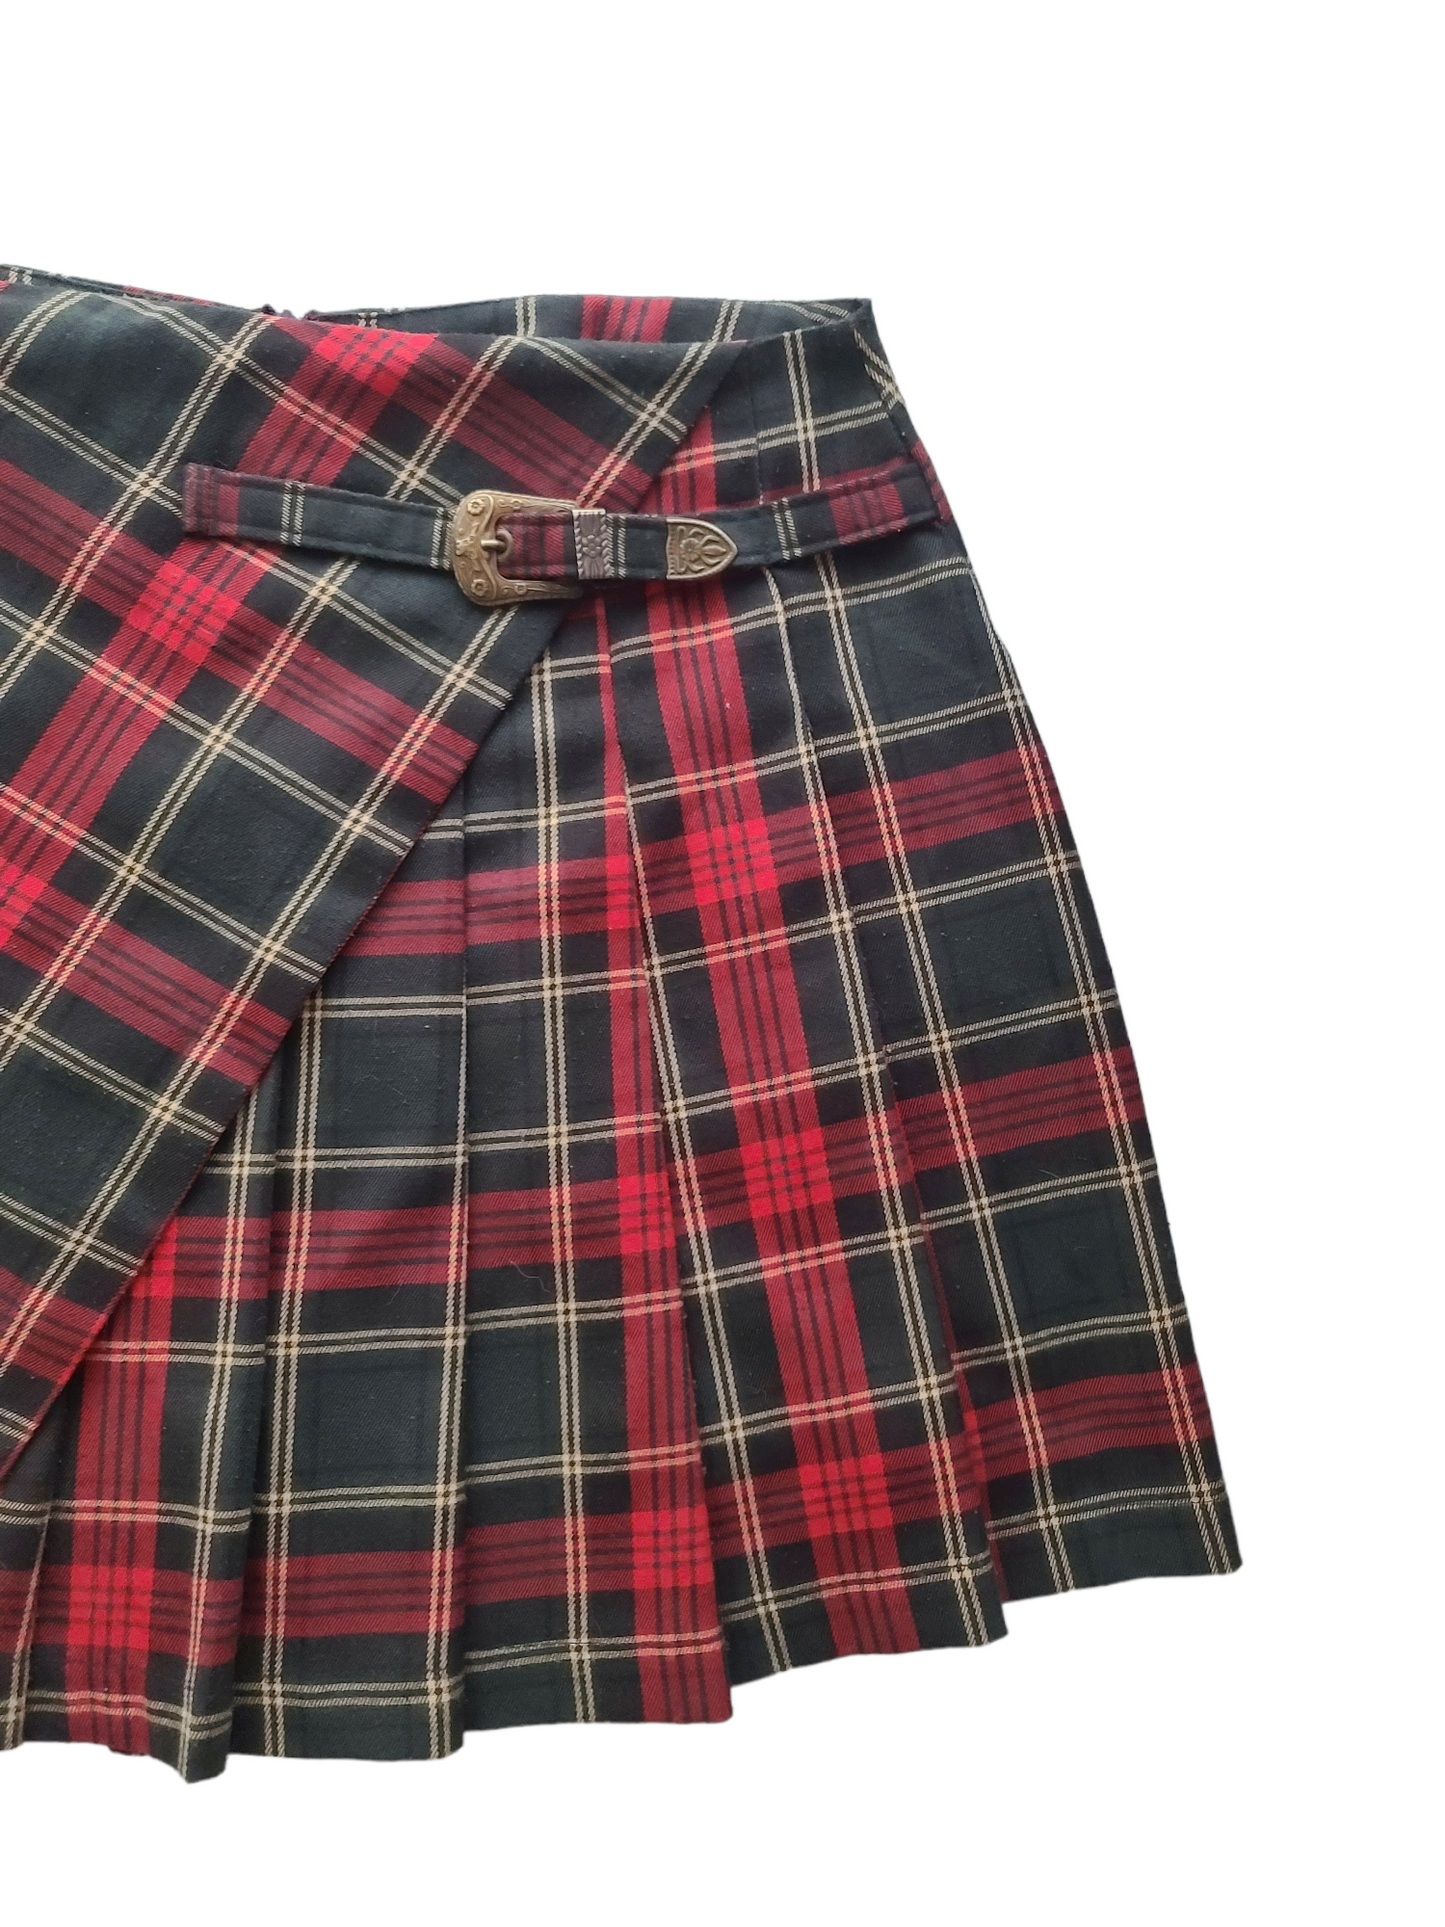 90s plaid grunge pleated skirt